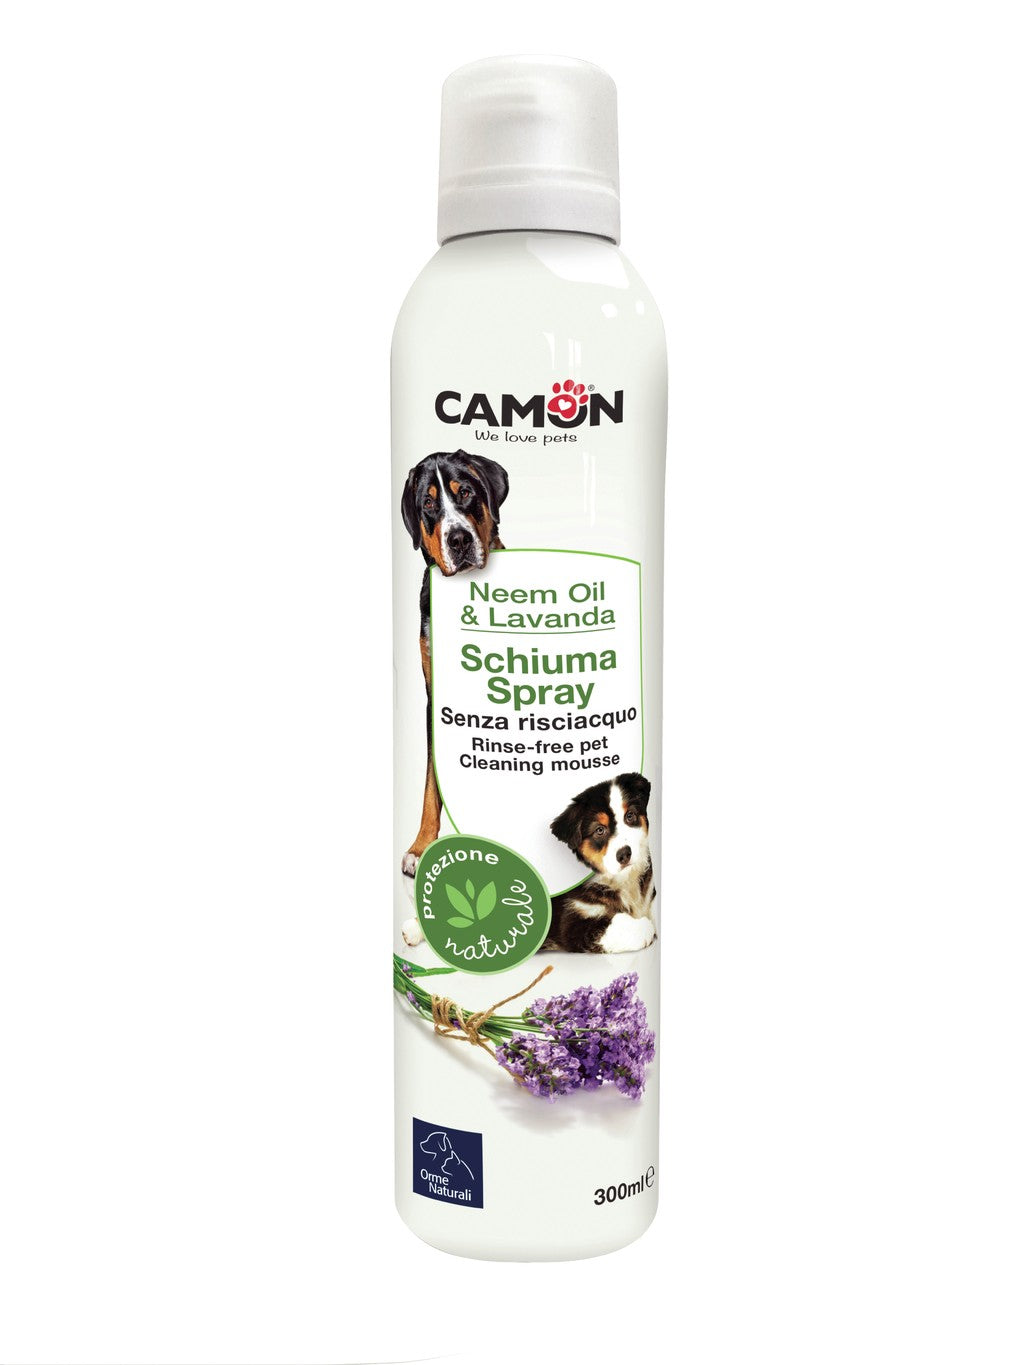 Camon Schiuma spray senza risciacquo al Neem e Lavanda - G970